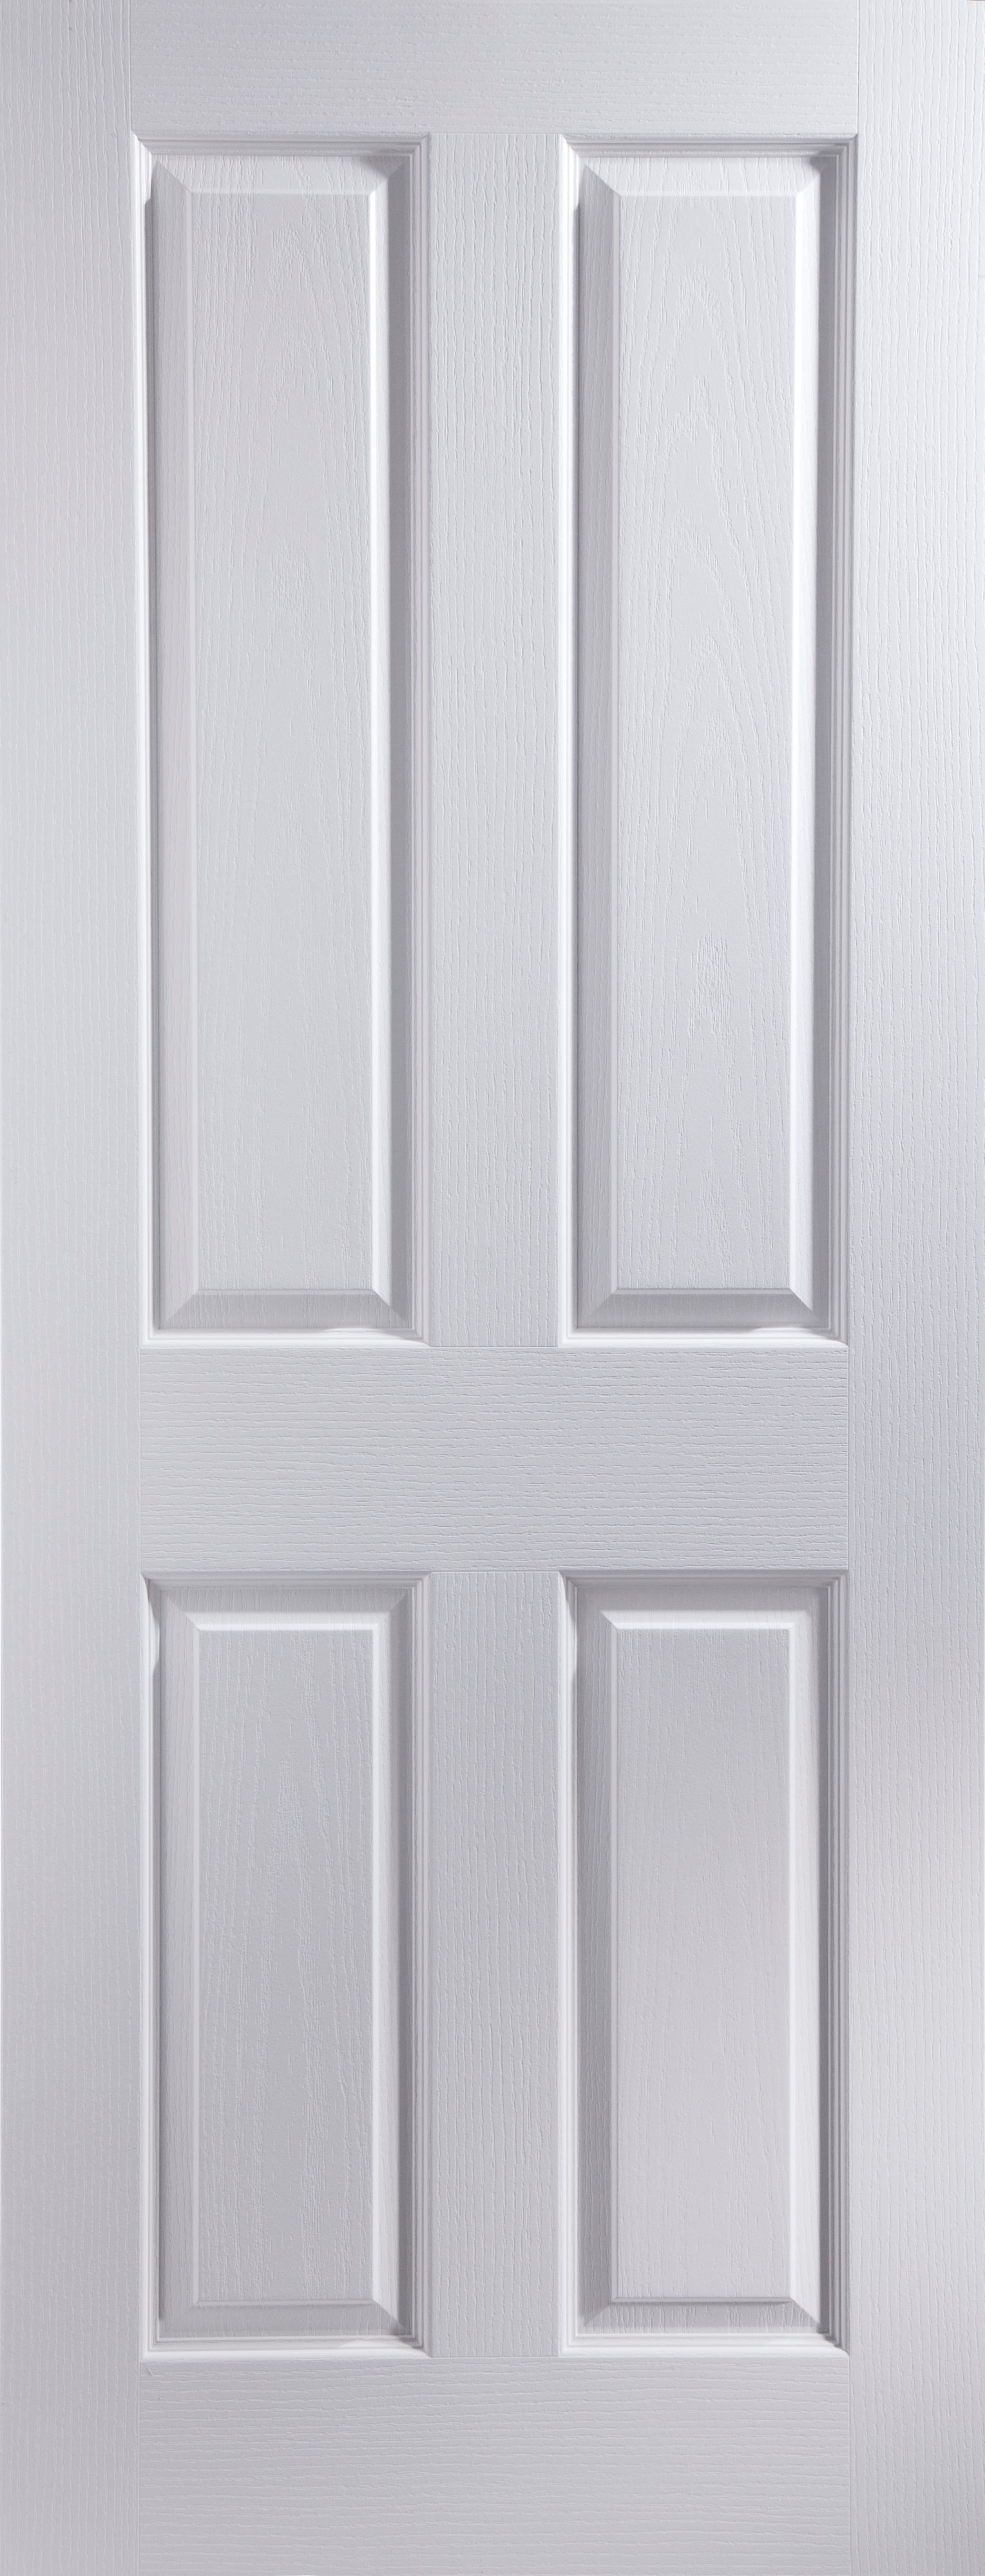 Geom 4 panel Unglazed White Woodgrain effect Internal Fire door, (H)1981mm (W)838mm (T)44mm